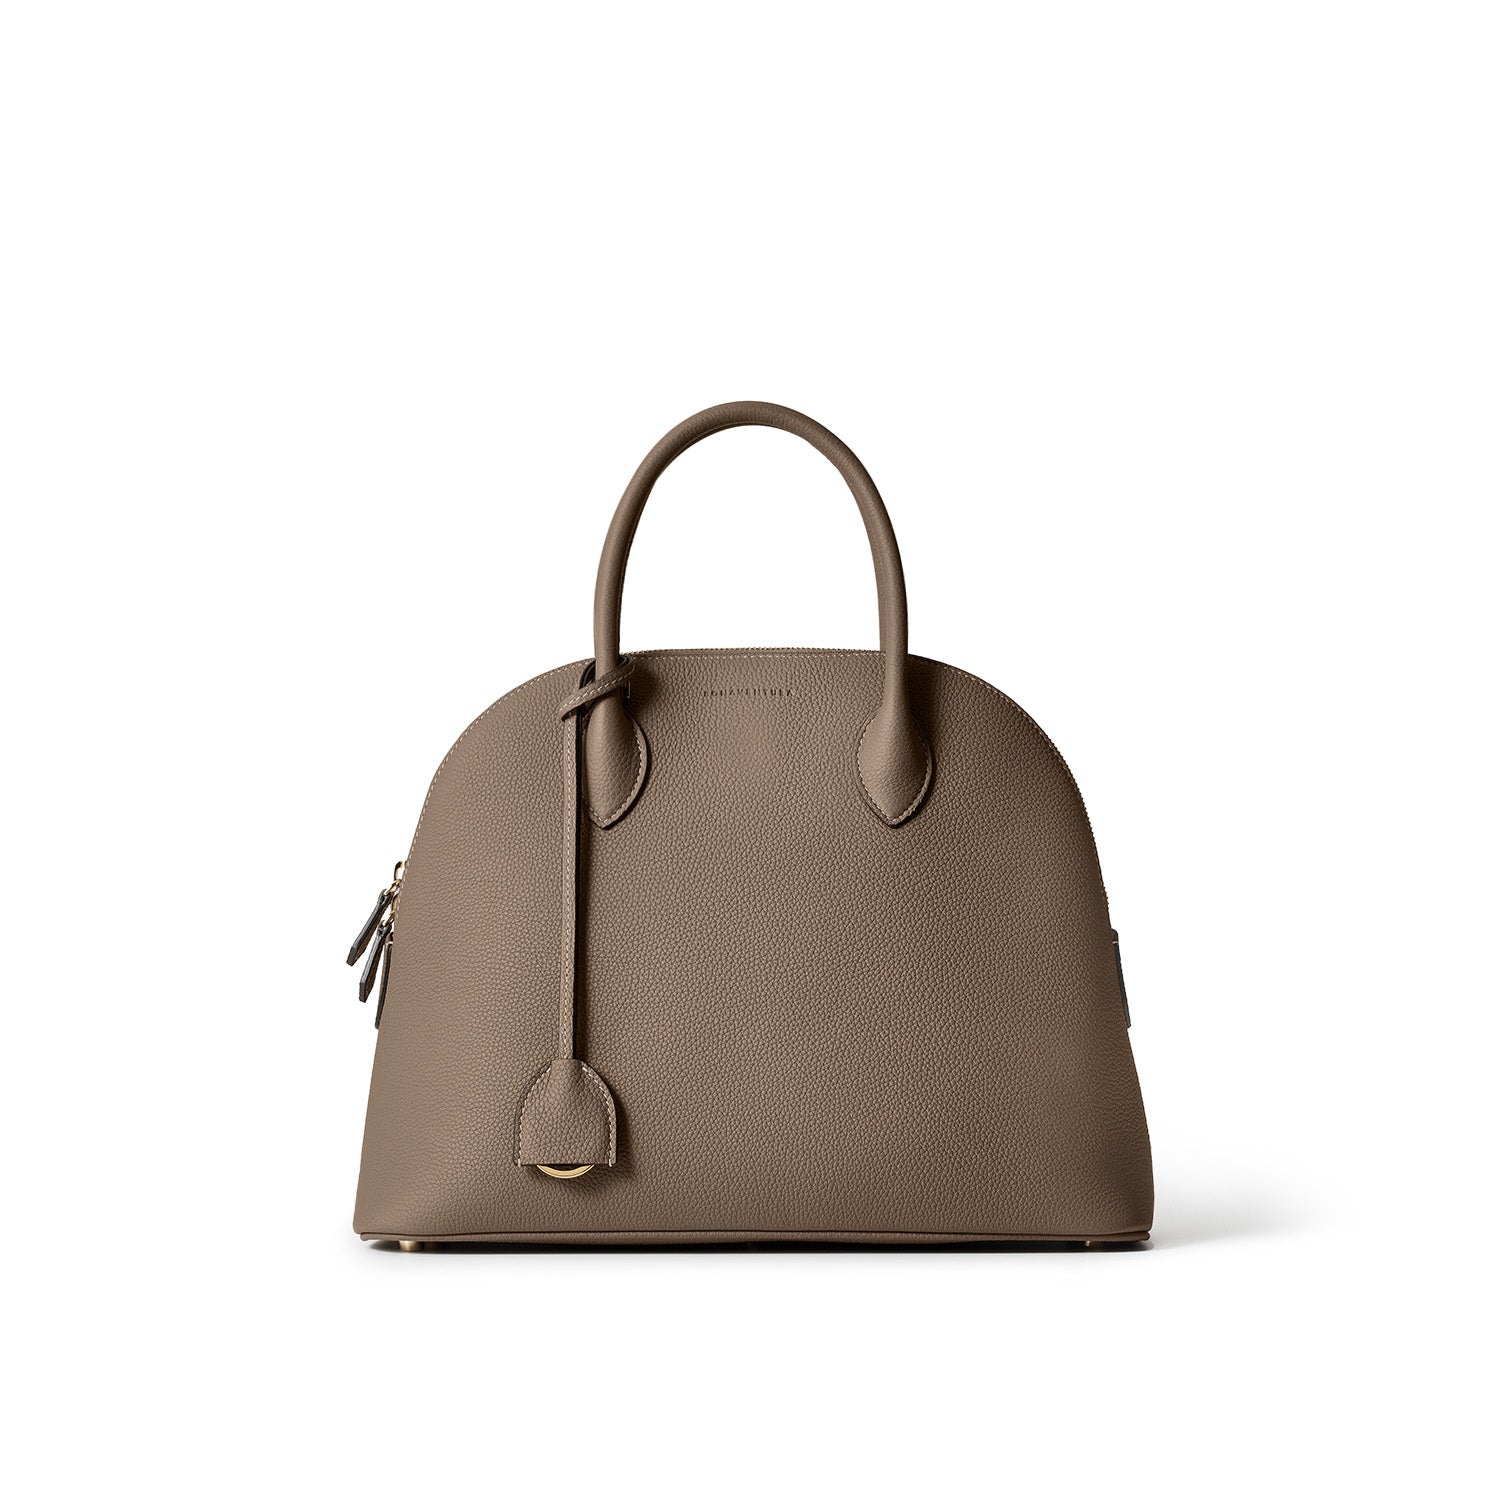 上質なレザーのハンドバッグ – イタリア(ミラノ)発の高級革製品の通販 